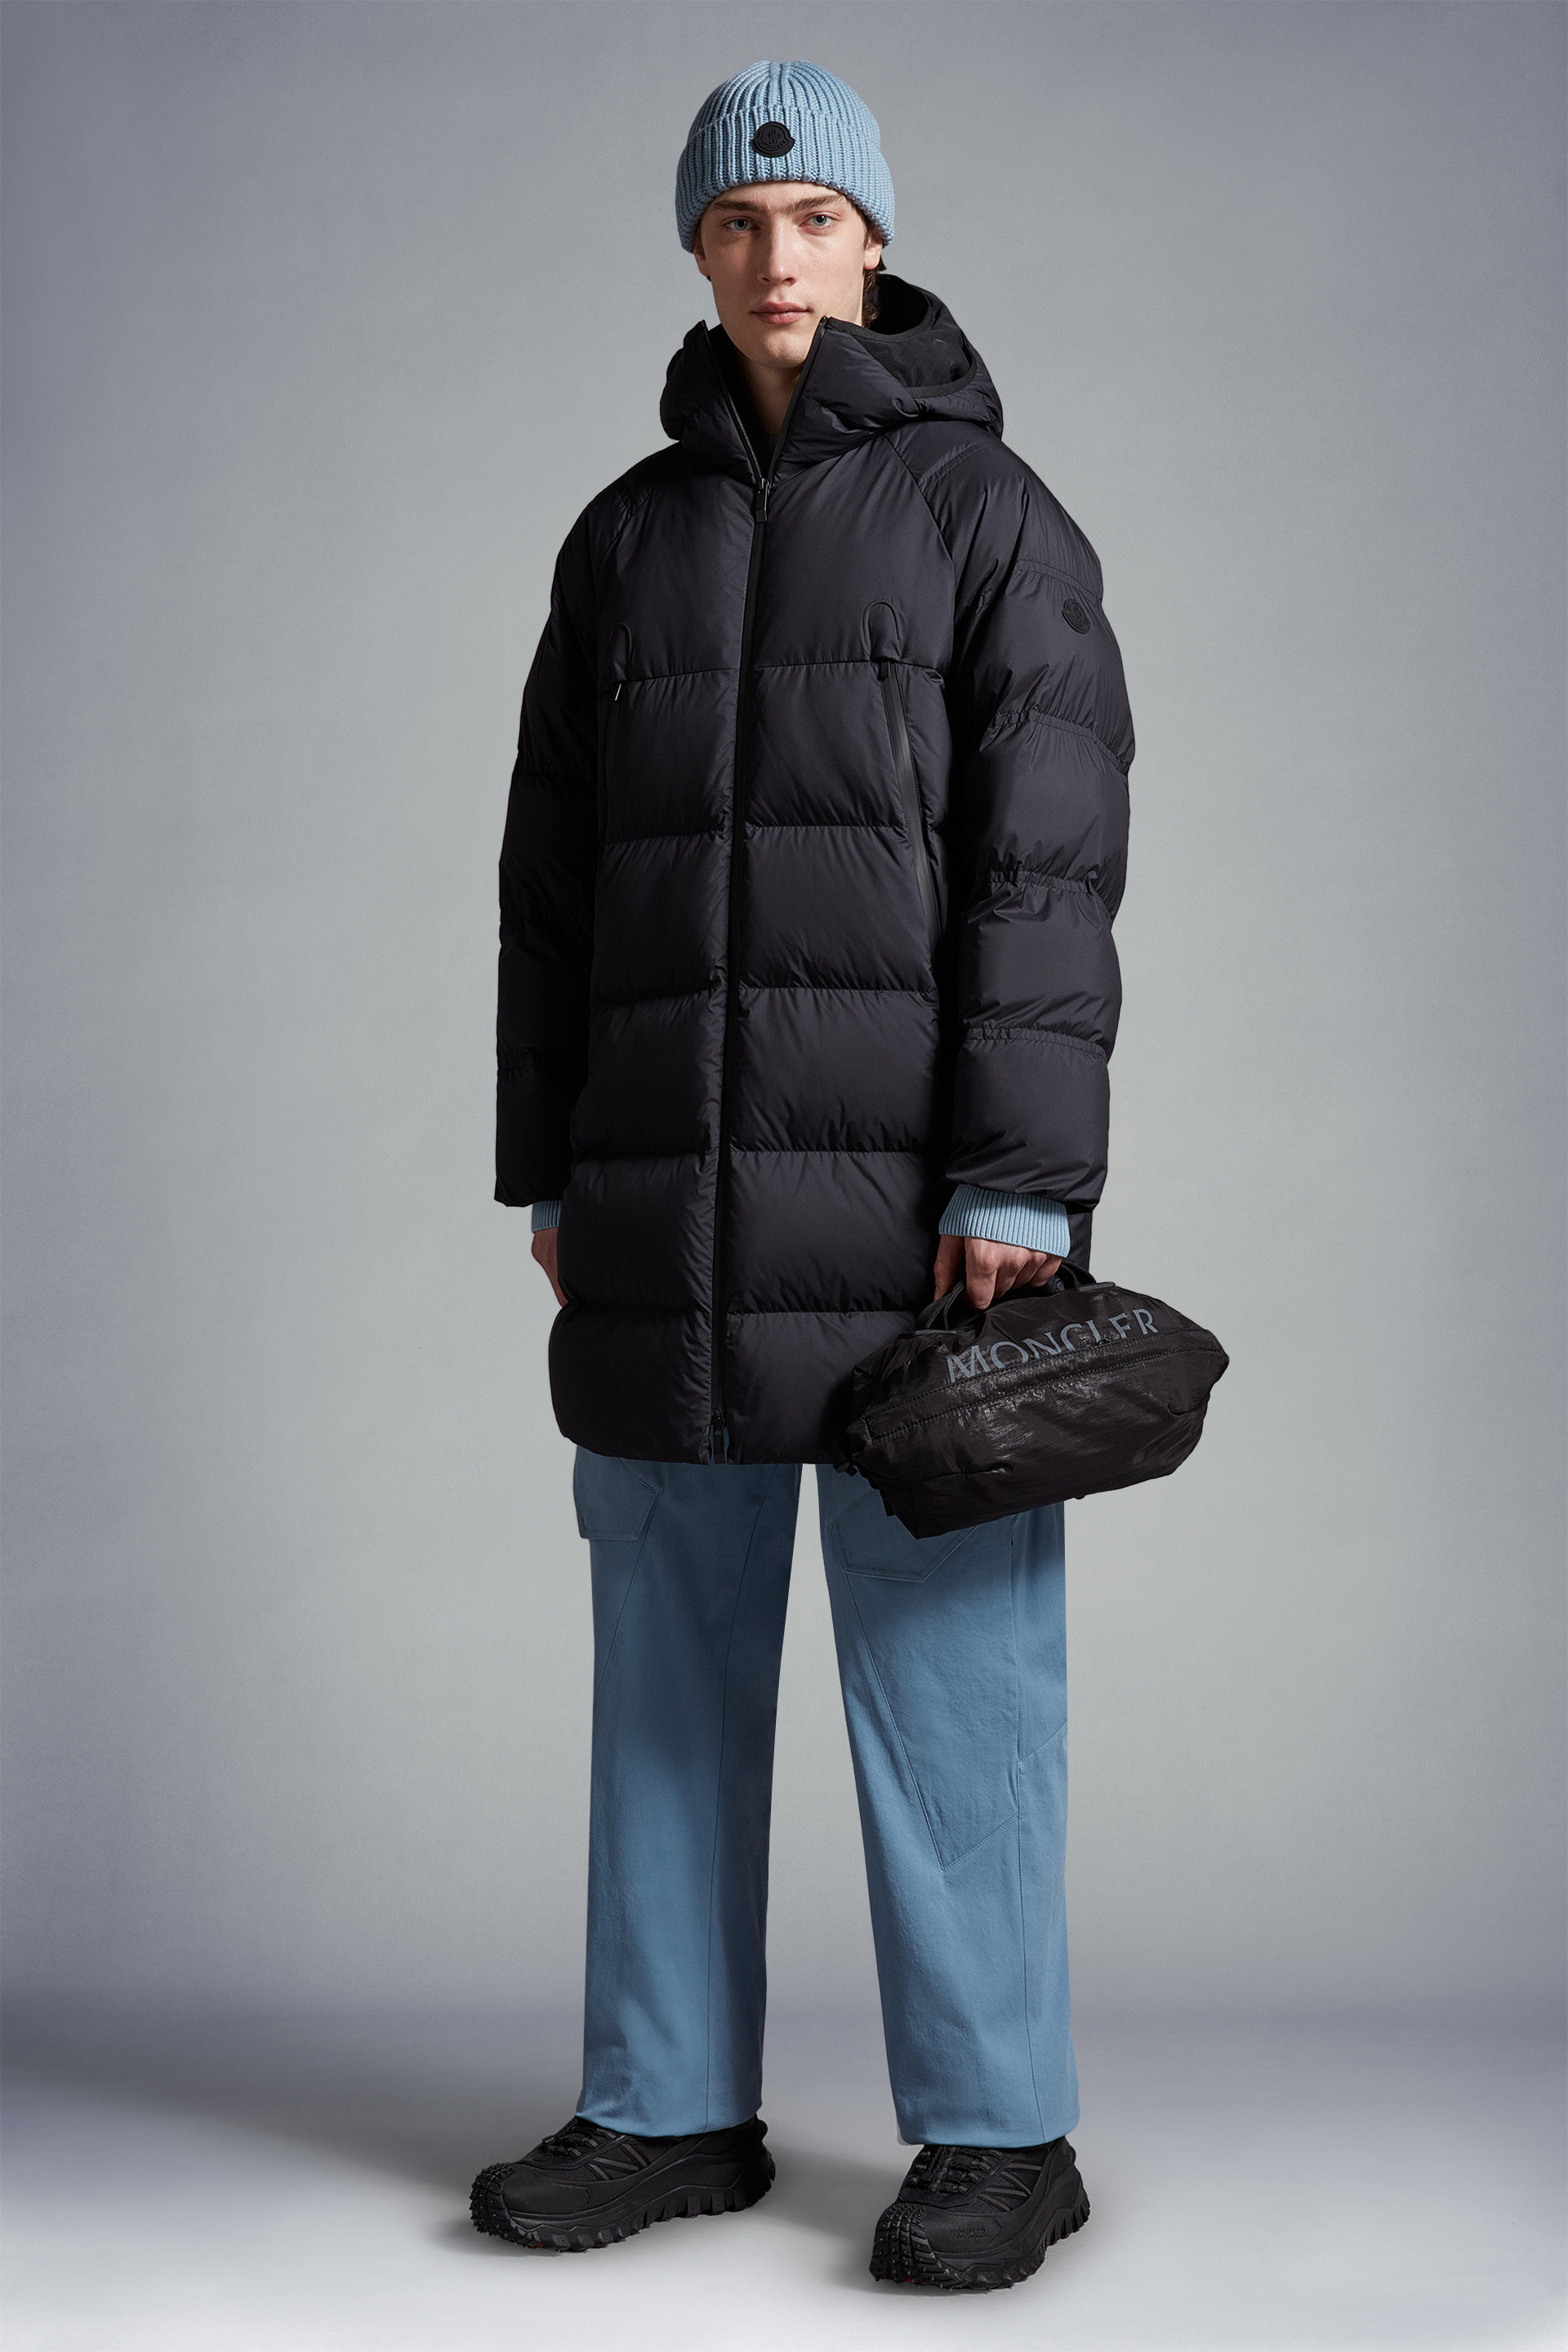 Moncler Jacket Mens Large Discount | website.jkuat.ac.ke